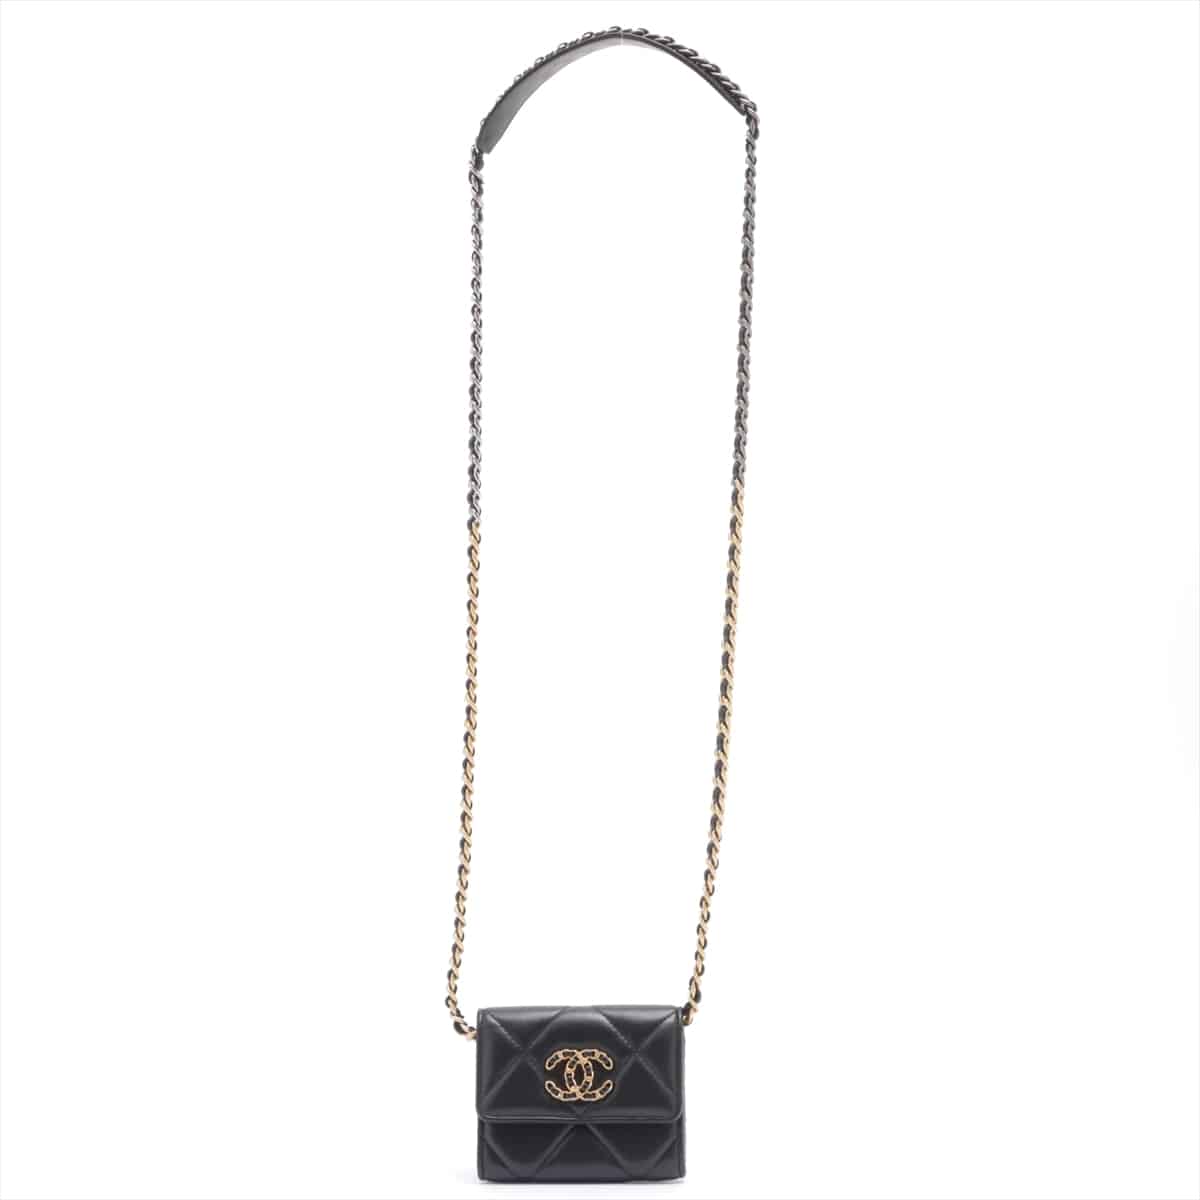 Chanel CHANEL 19 Lambskin Chain wallet Card Case Black Gold Metal fittings 30